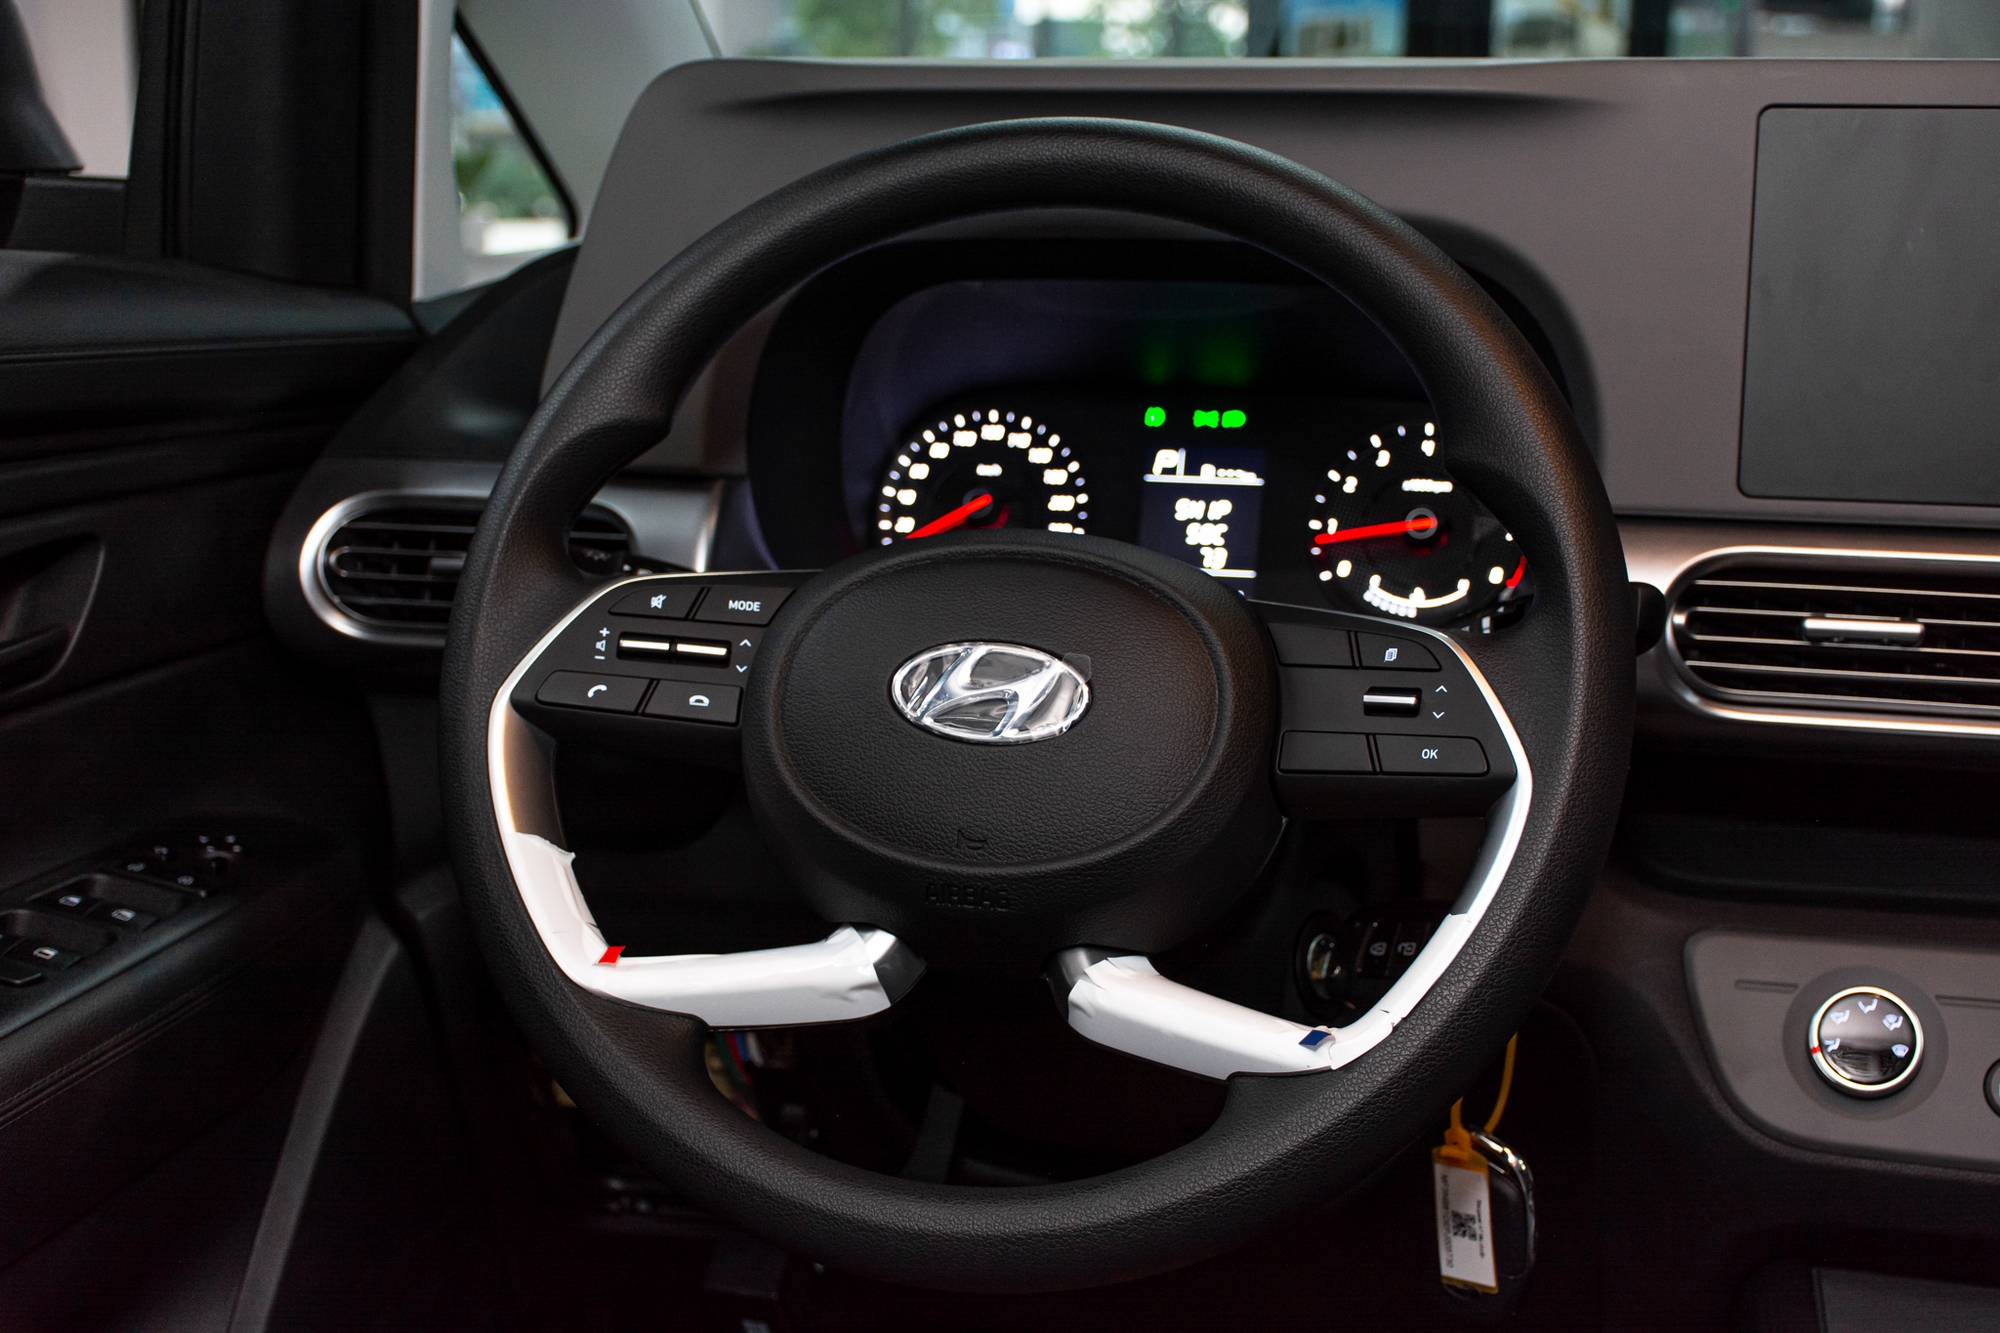 Xem Hyundai Stargazer phiên bản rẻ nhất: Nhắm tới tệp tài xế dịch vụ nhưng thiếu nhiều trang bị cơ bản - Ảnh 7.